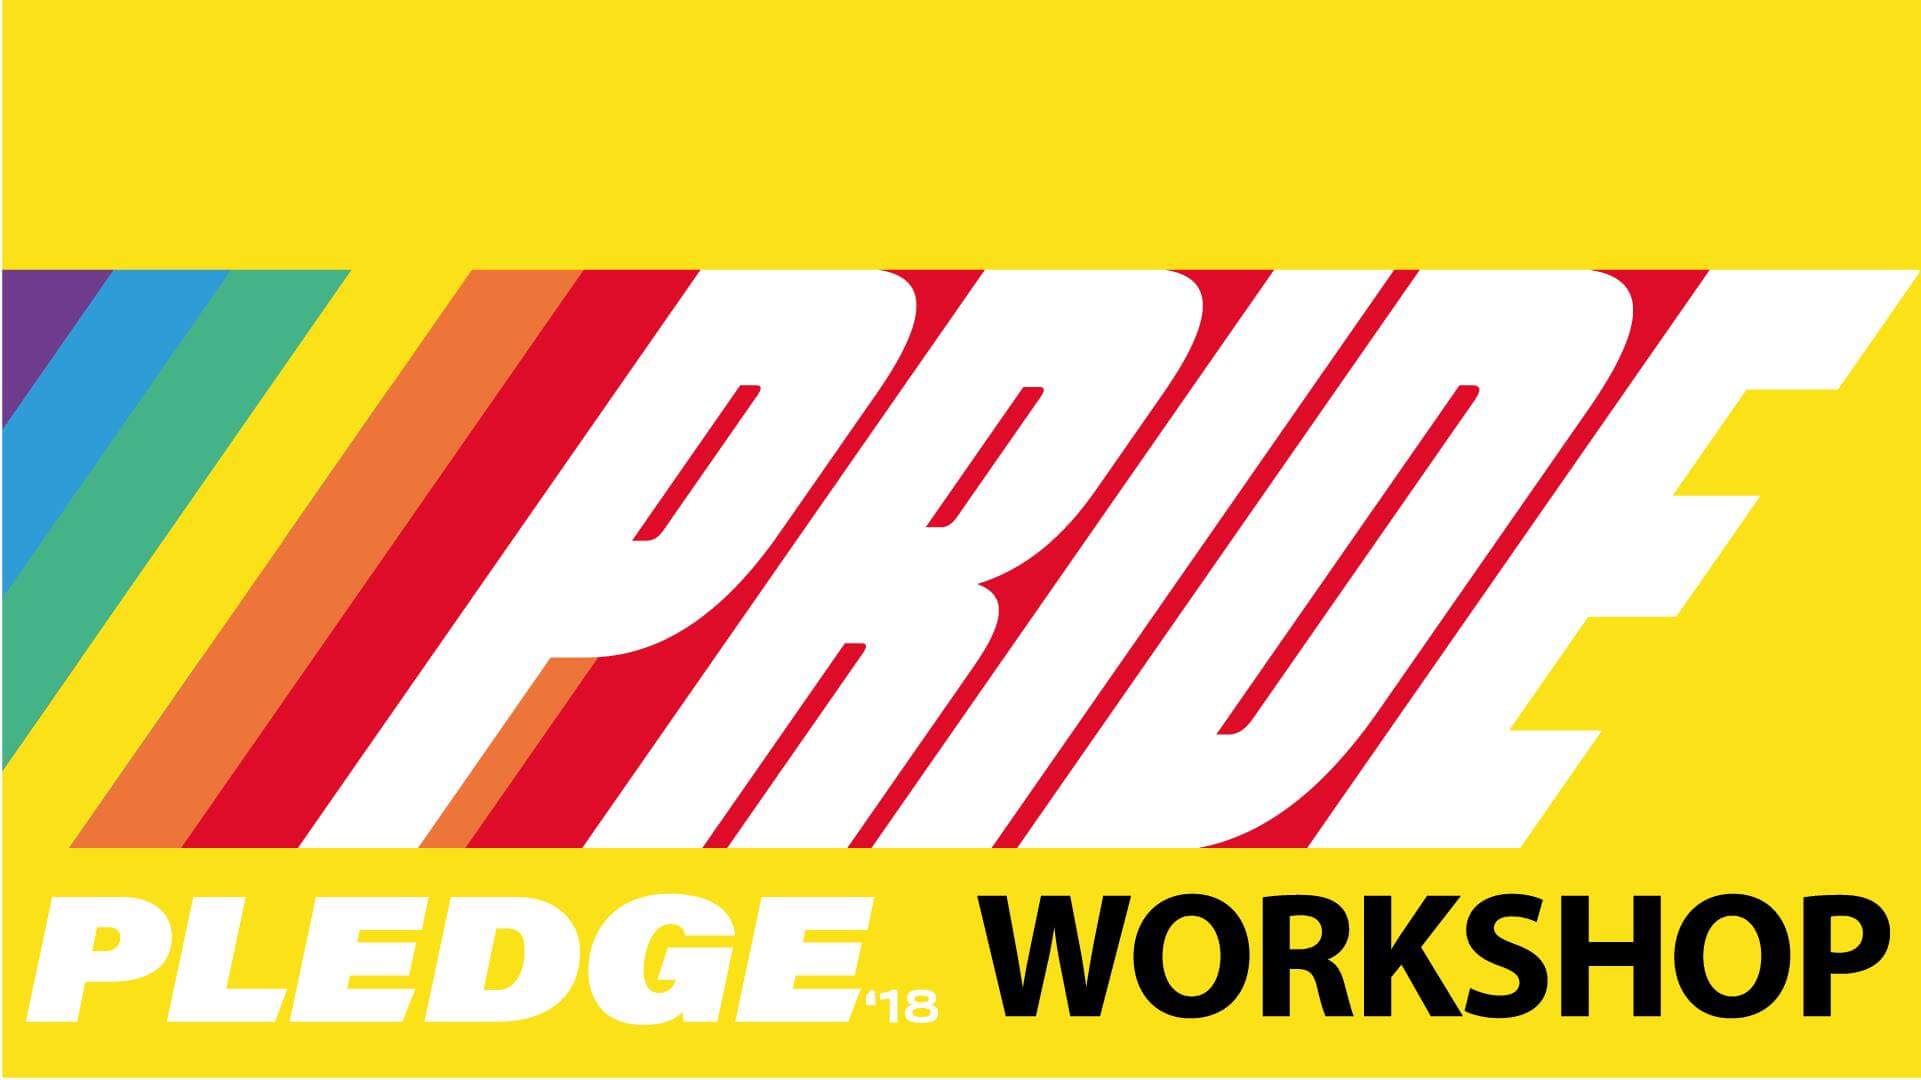 Pride Pledge Workshop 2018